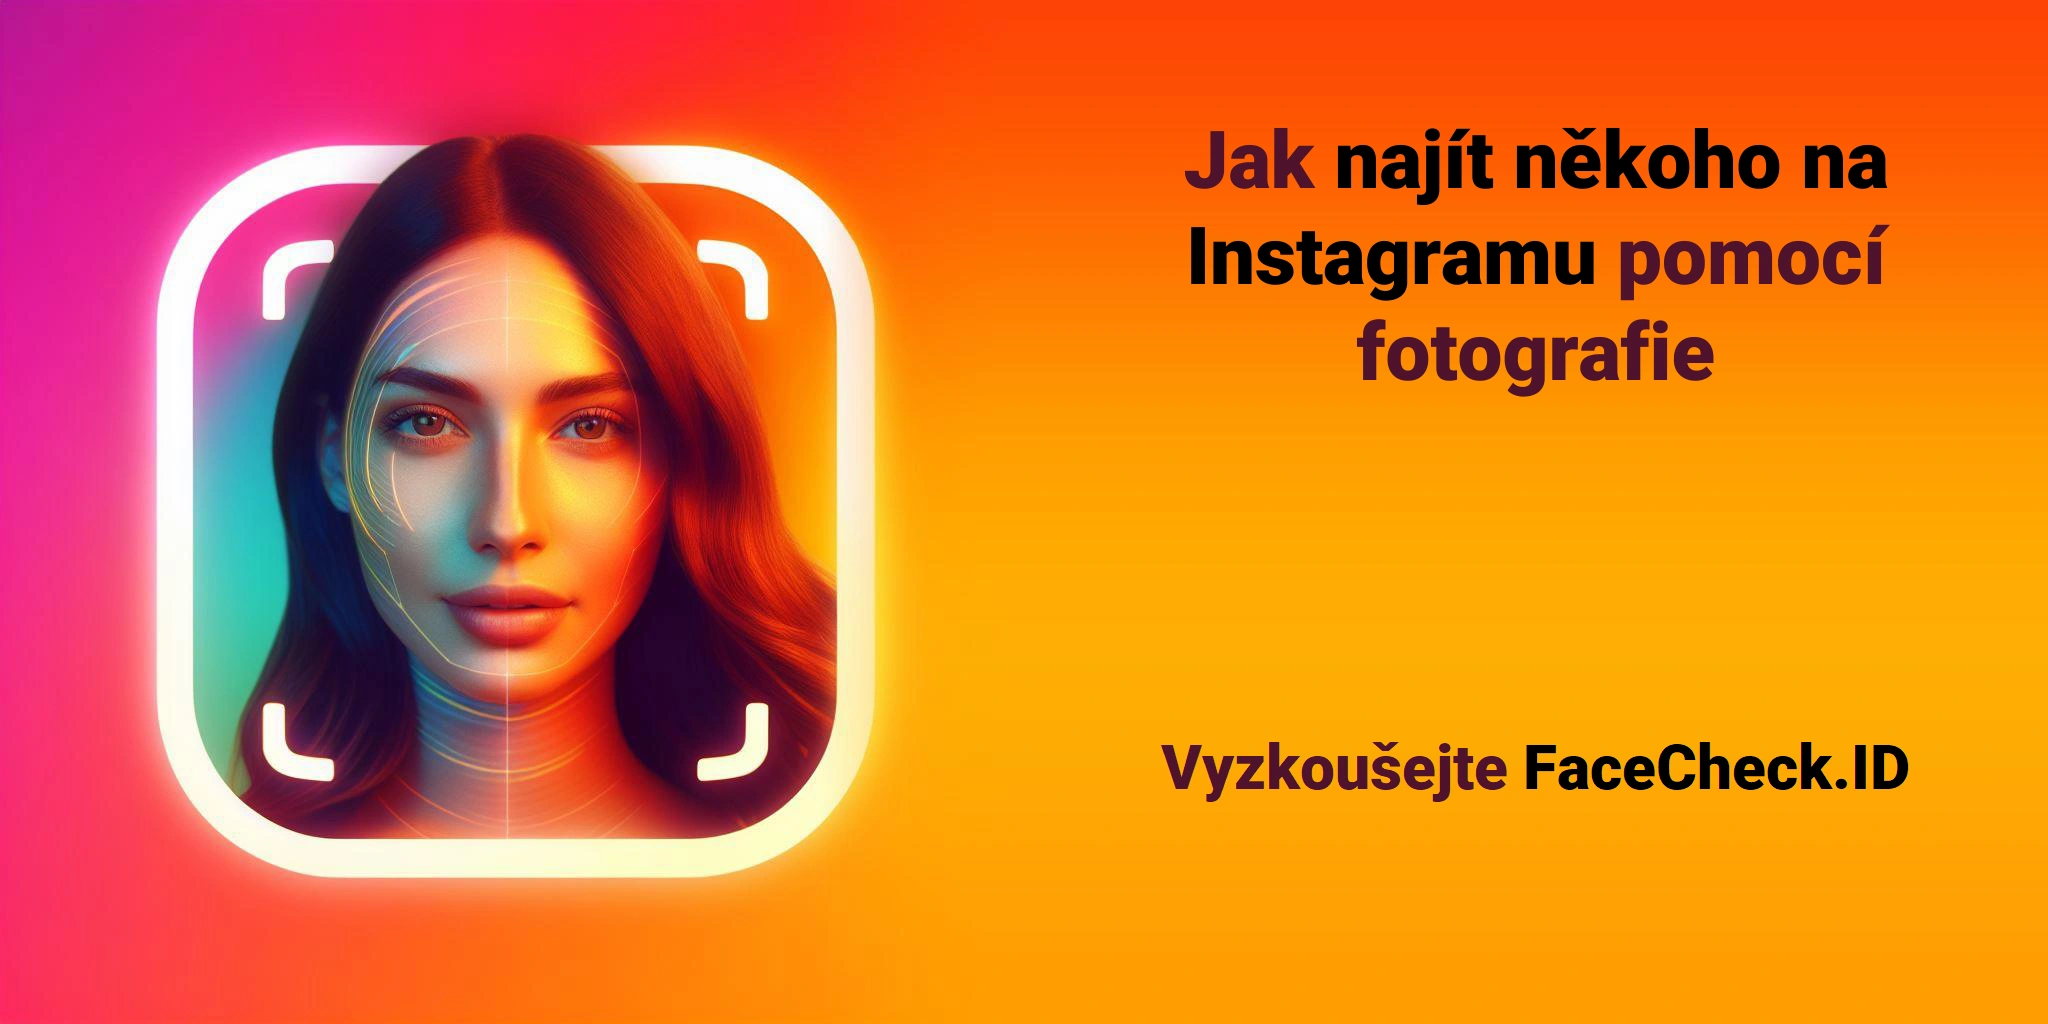 Jak najít někoho na Instagramu pomocí fotografie Vyzkoušejte FaceCheck.ID